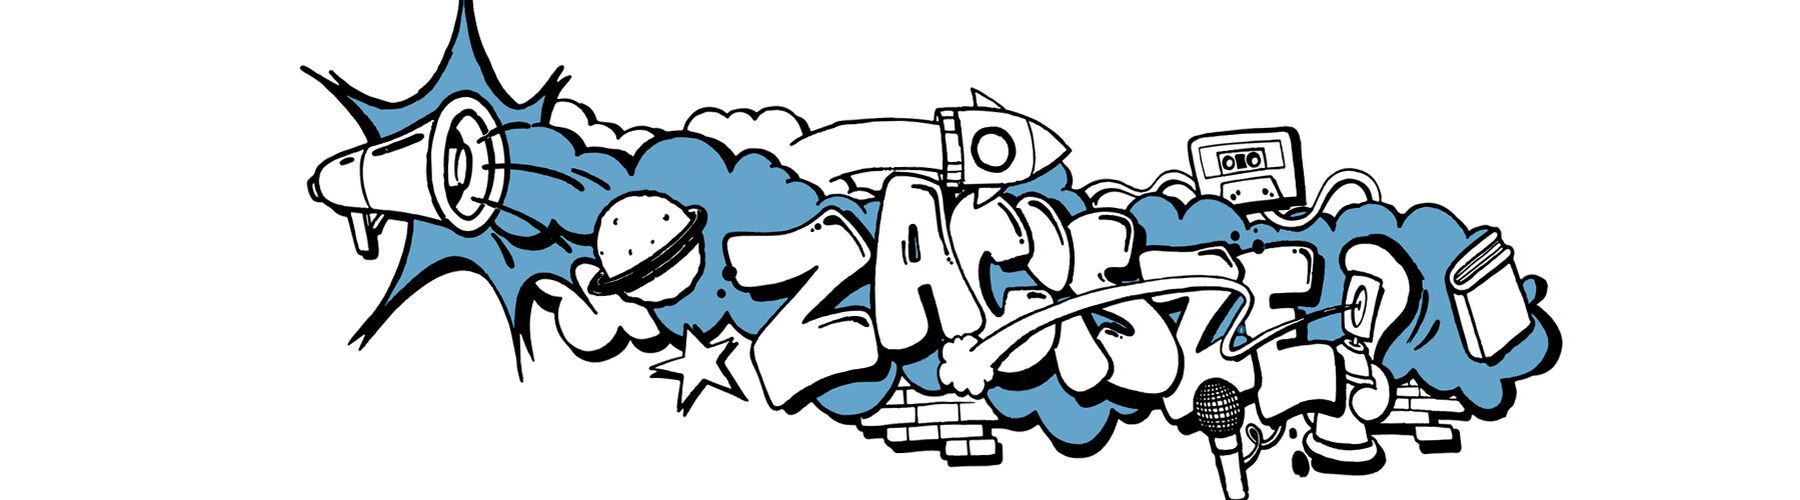 Graffiti z napisem Zacisze